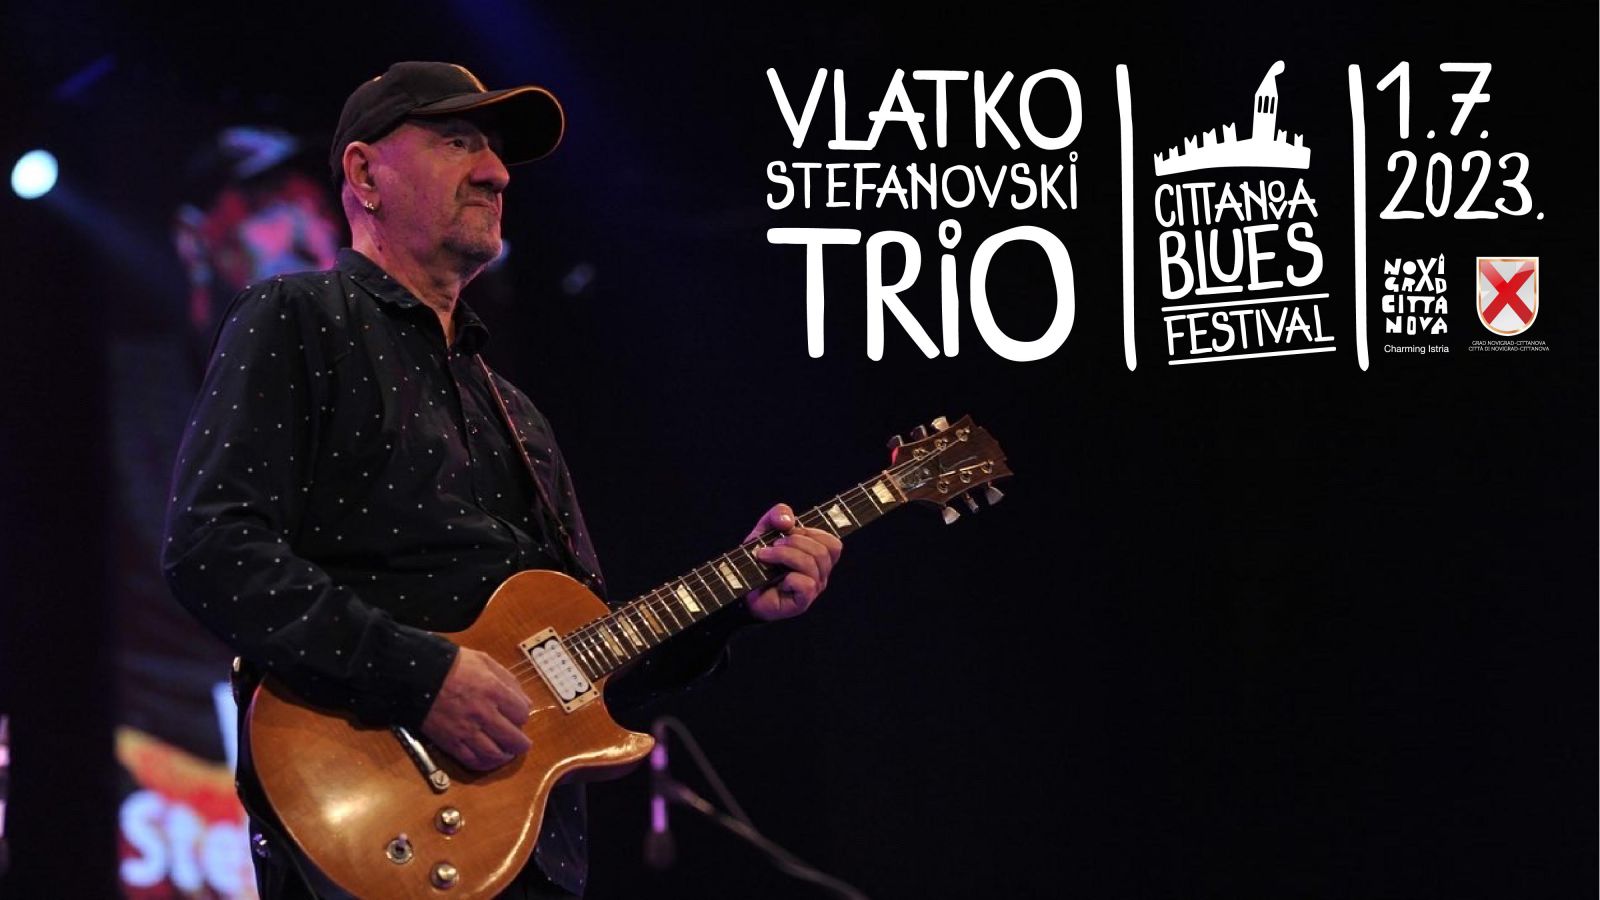 Virtuozni gitarist Vlatko Stefanovski na Cittanova Blues Festivalu 2023